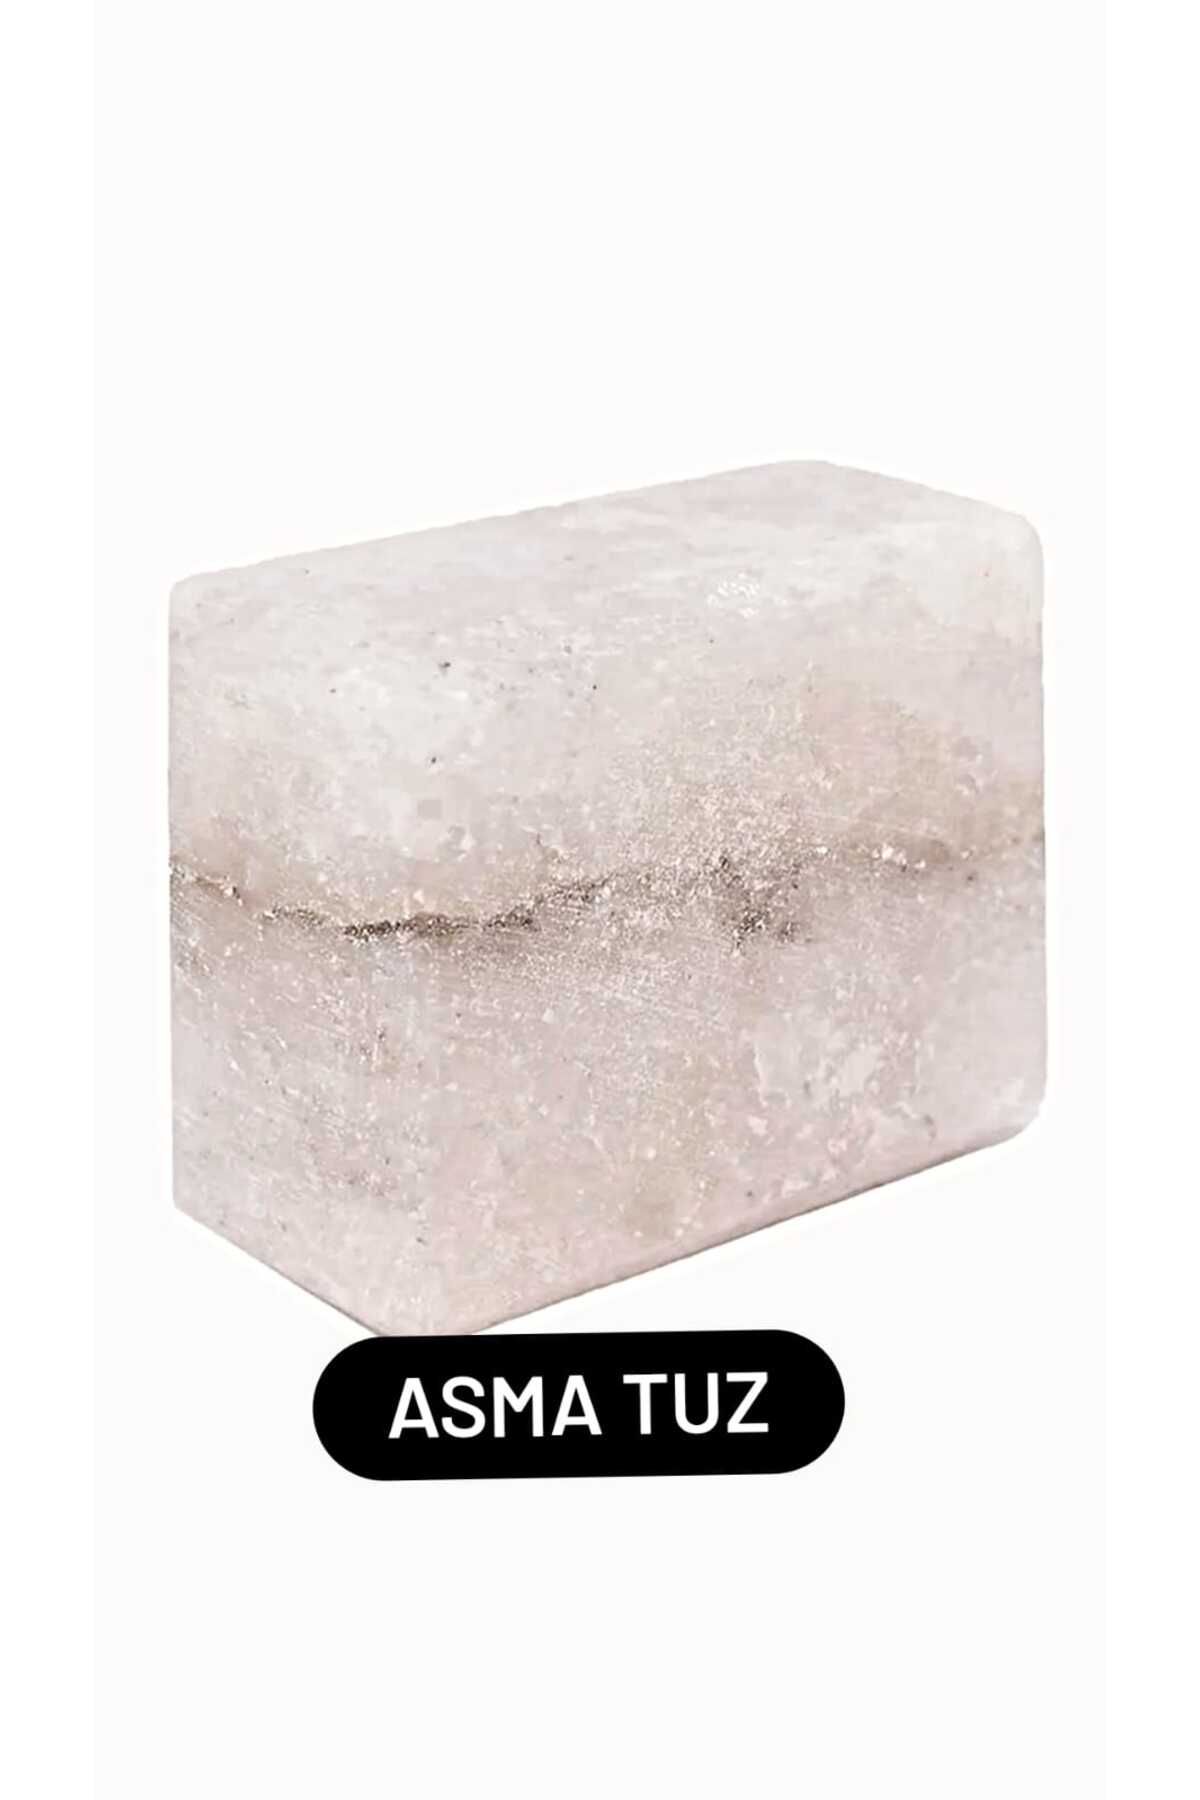 asma Tuz Sabun Çankırı Kaya Tuzu Tuz 1 Adet 450 gr